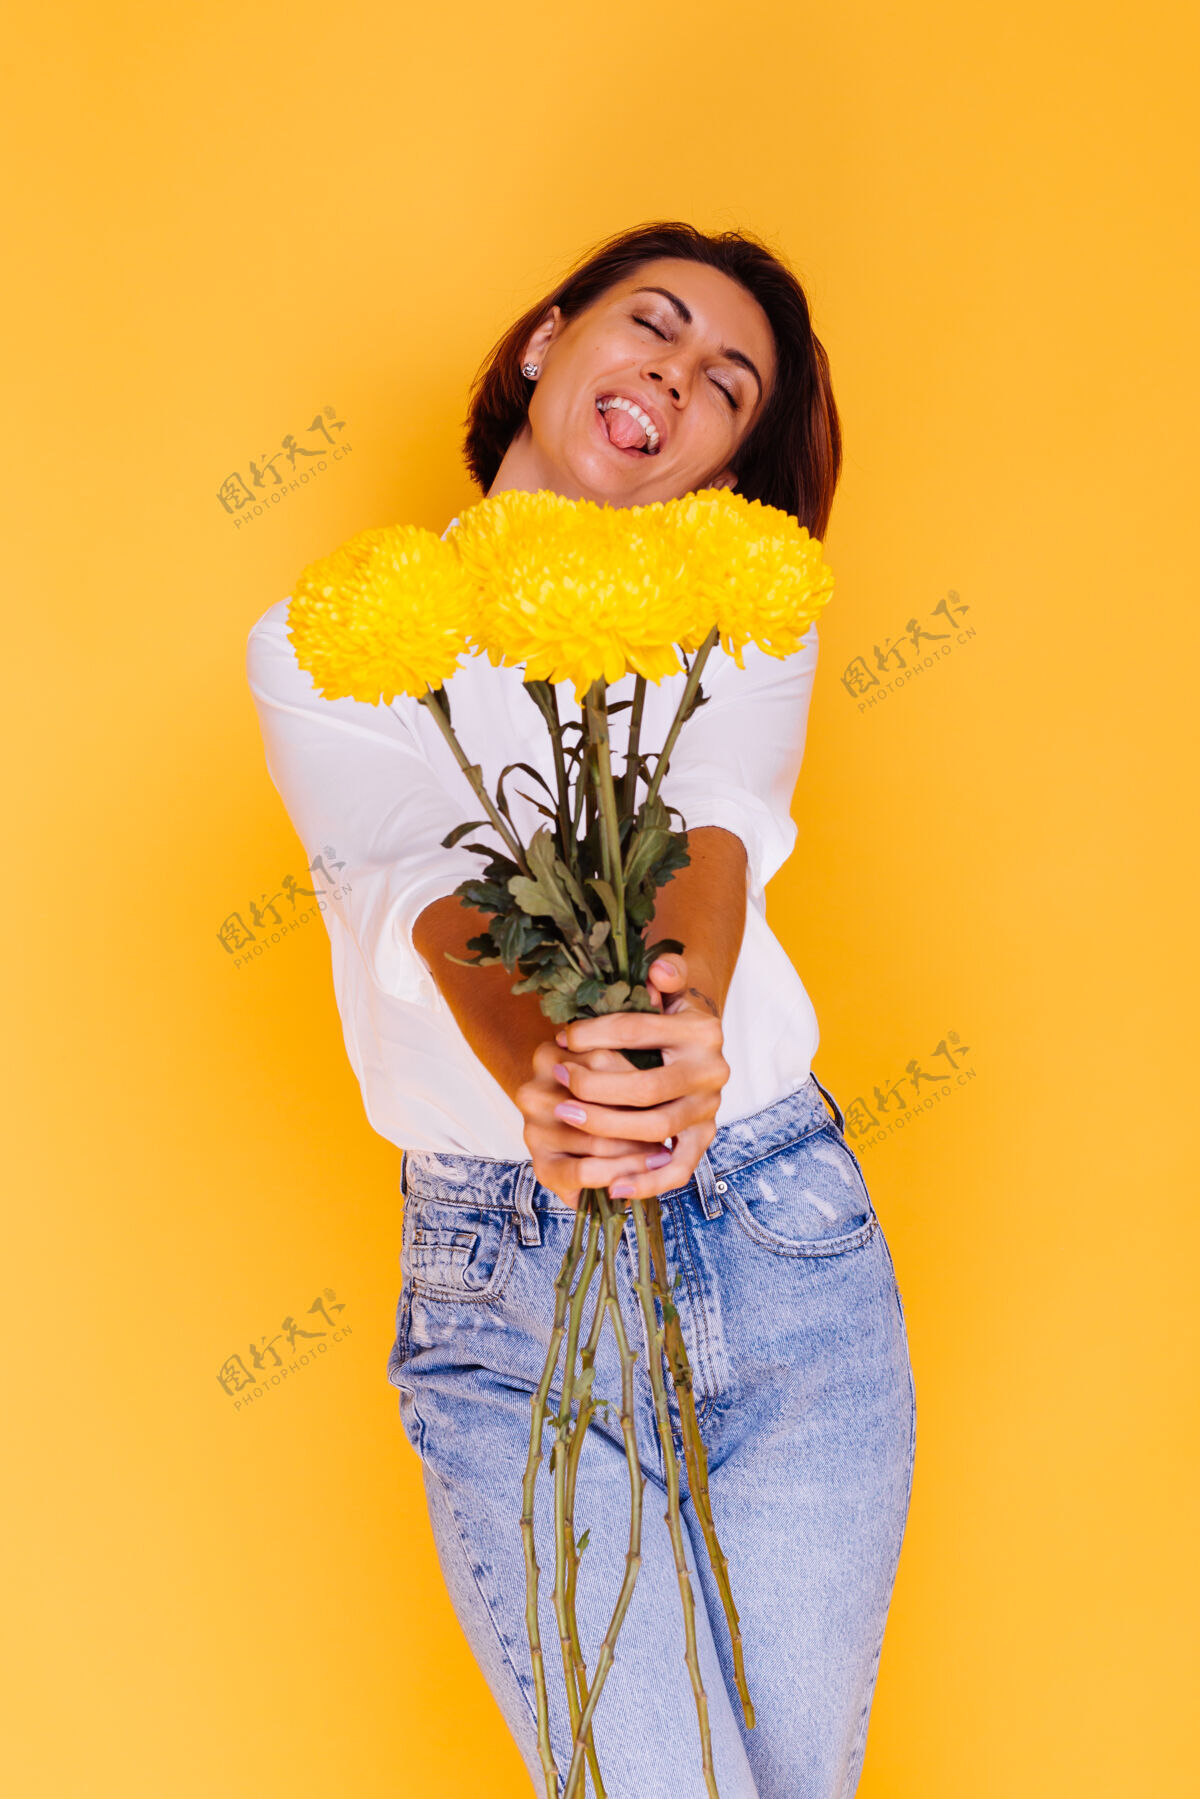 植物摄影棚拍摄的黄色背景快乐的白人妇女短发穿着休闲服白衬衫和牛仔裤手持一束黄色紫苑积极礼物年轻